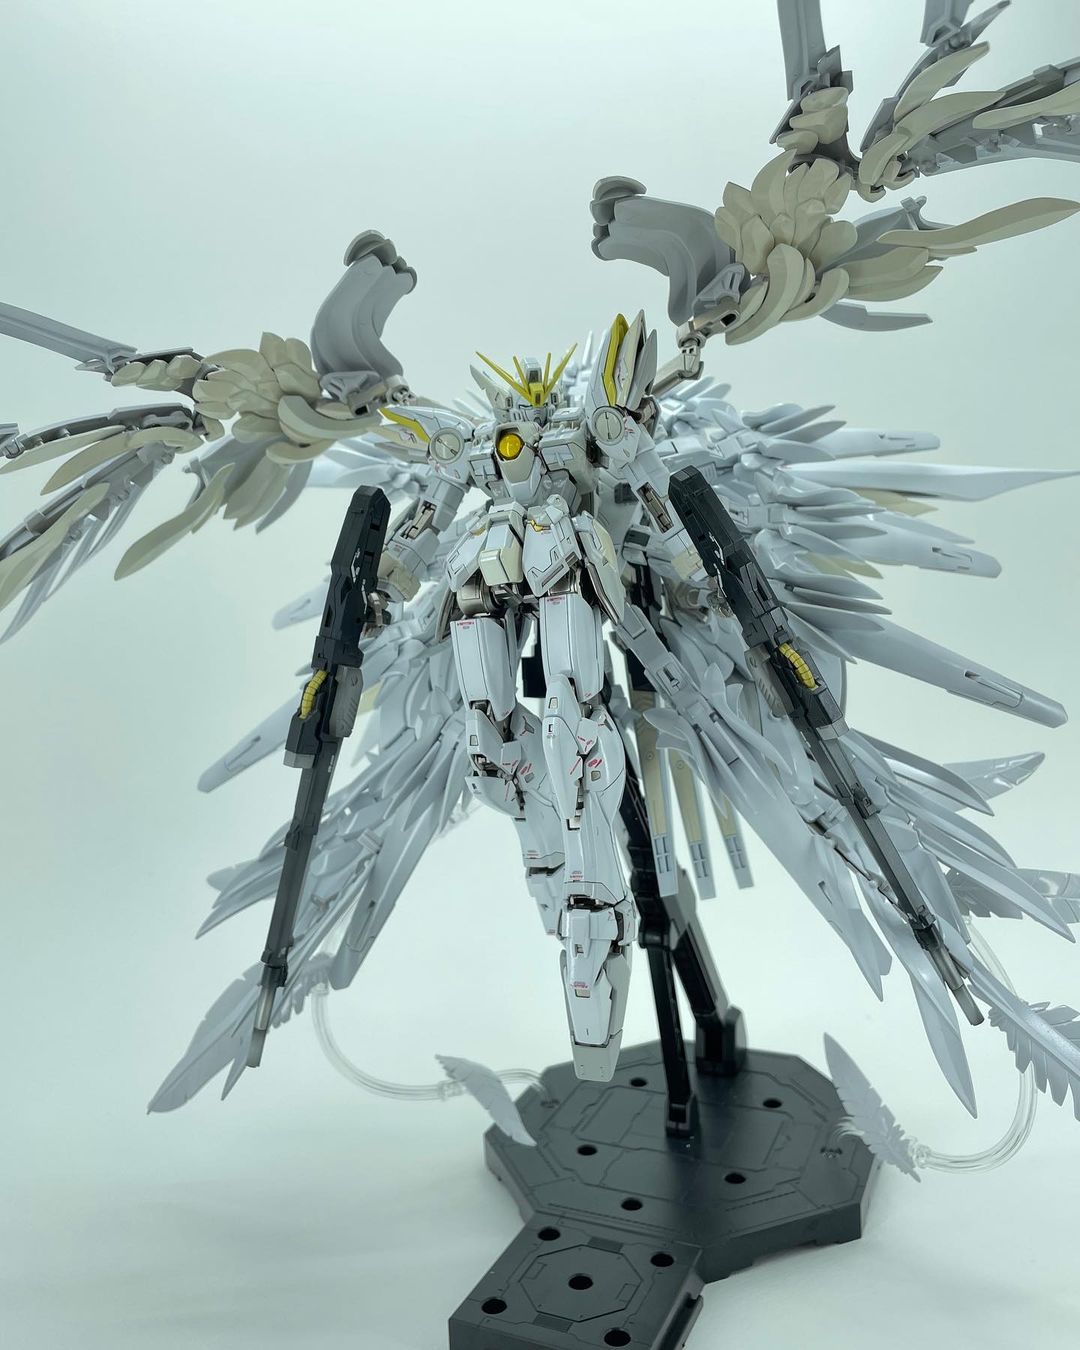 MG 1/100 XXXG-00W0 WING GUNDAM ZERO Ver.ka by ssssseph - Pilot-Exia Gundam